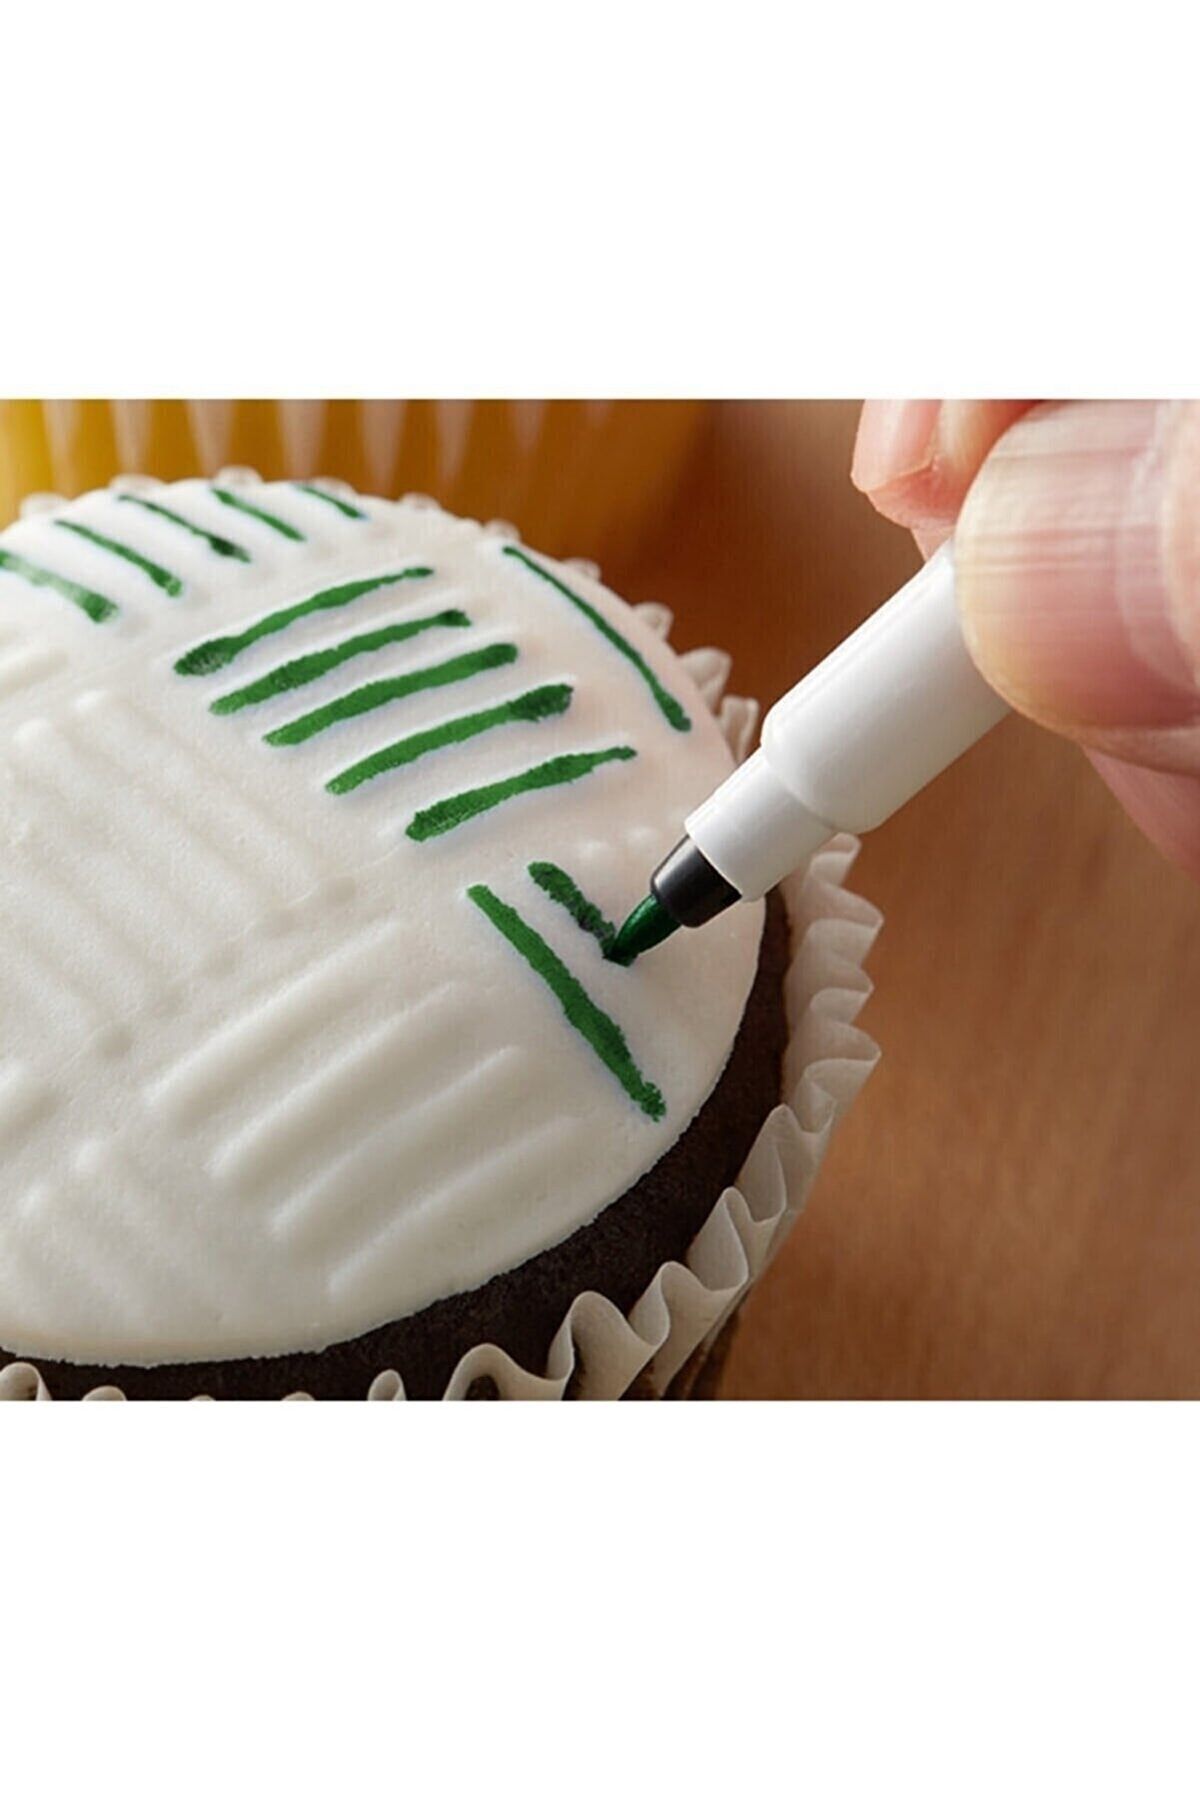 Genel Markalar Pasta Süsleme Ve Dekorasyon Için Yenilebilir Gıda Kalemi Yeşil